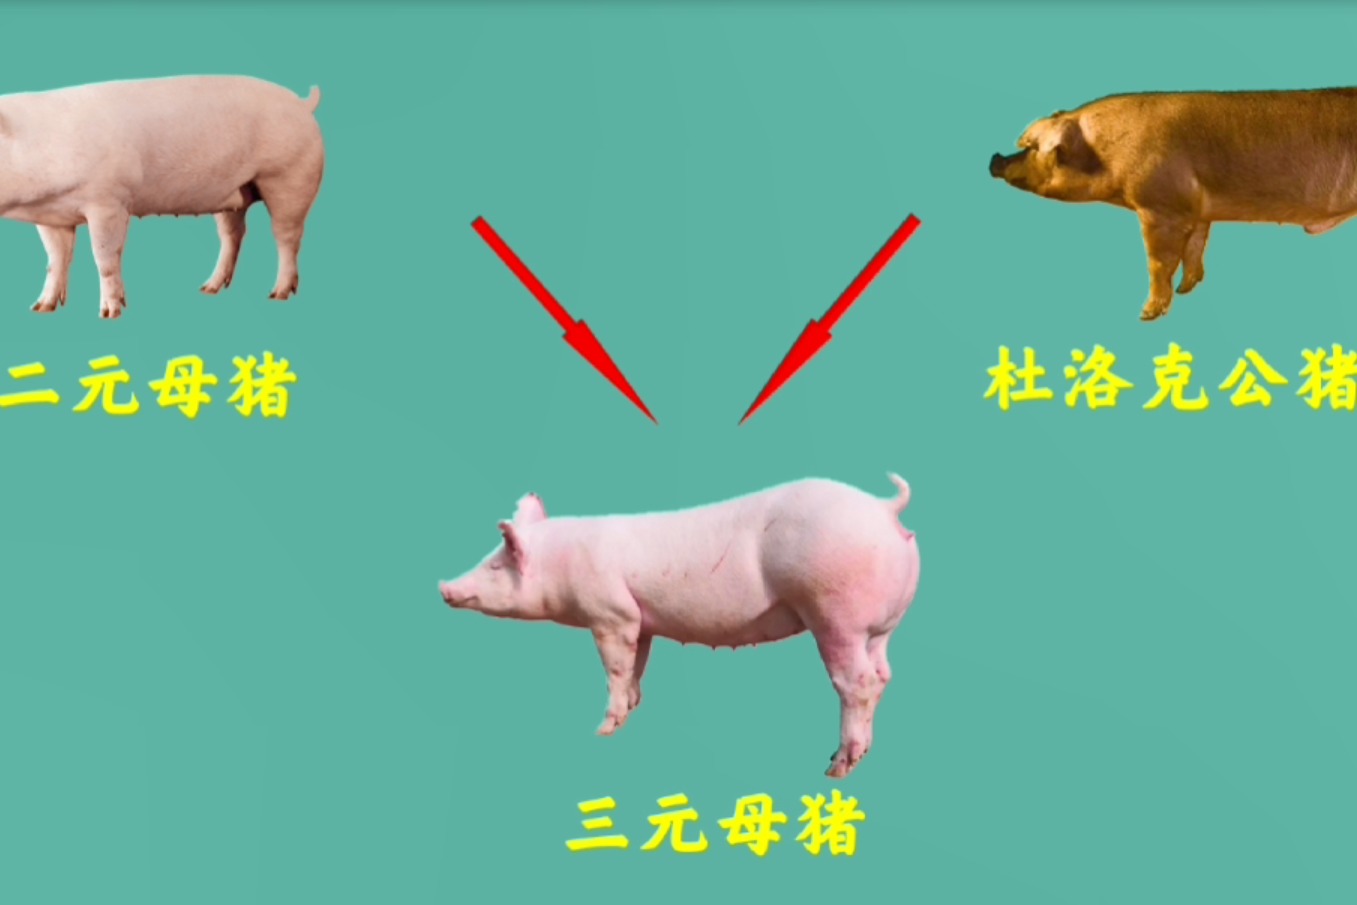 粮食猪和饲料猪的区别在哪里 - 知乎